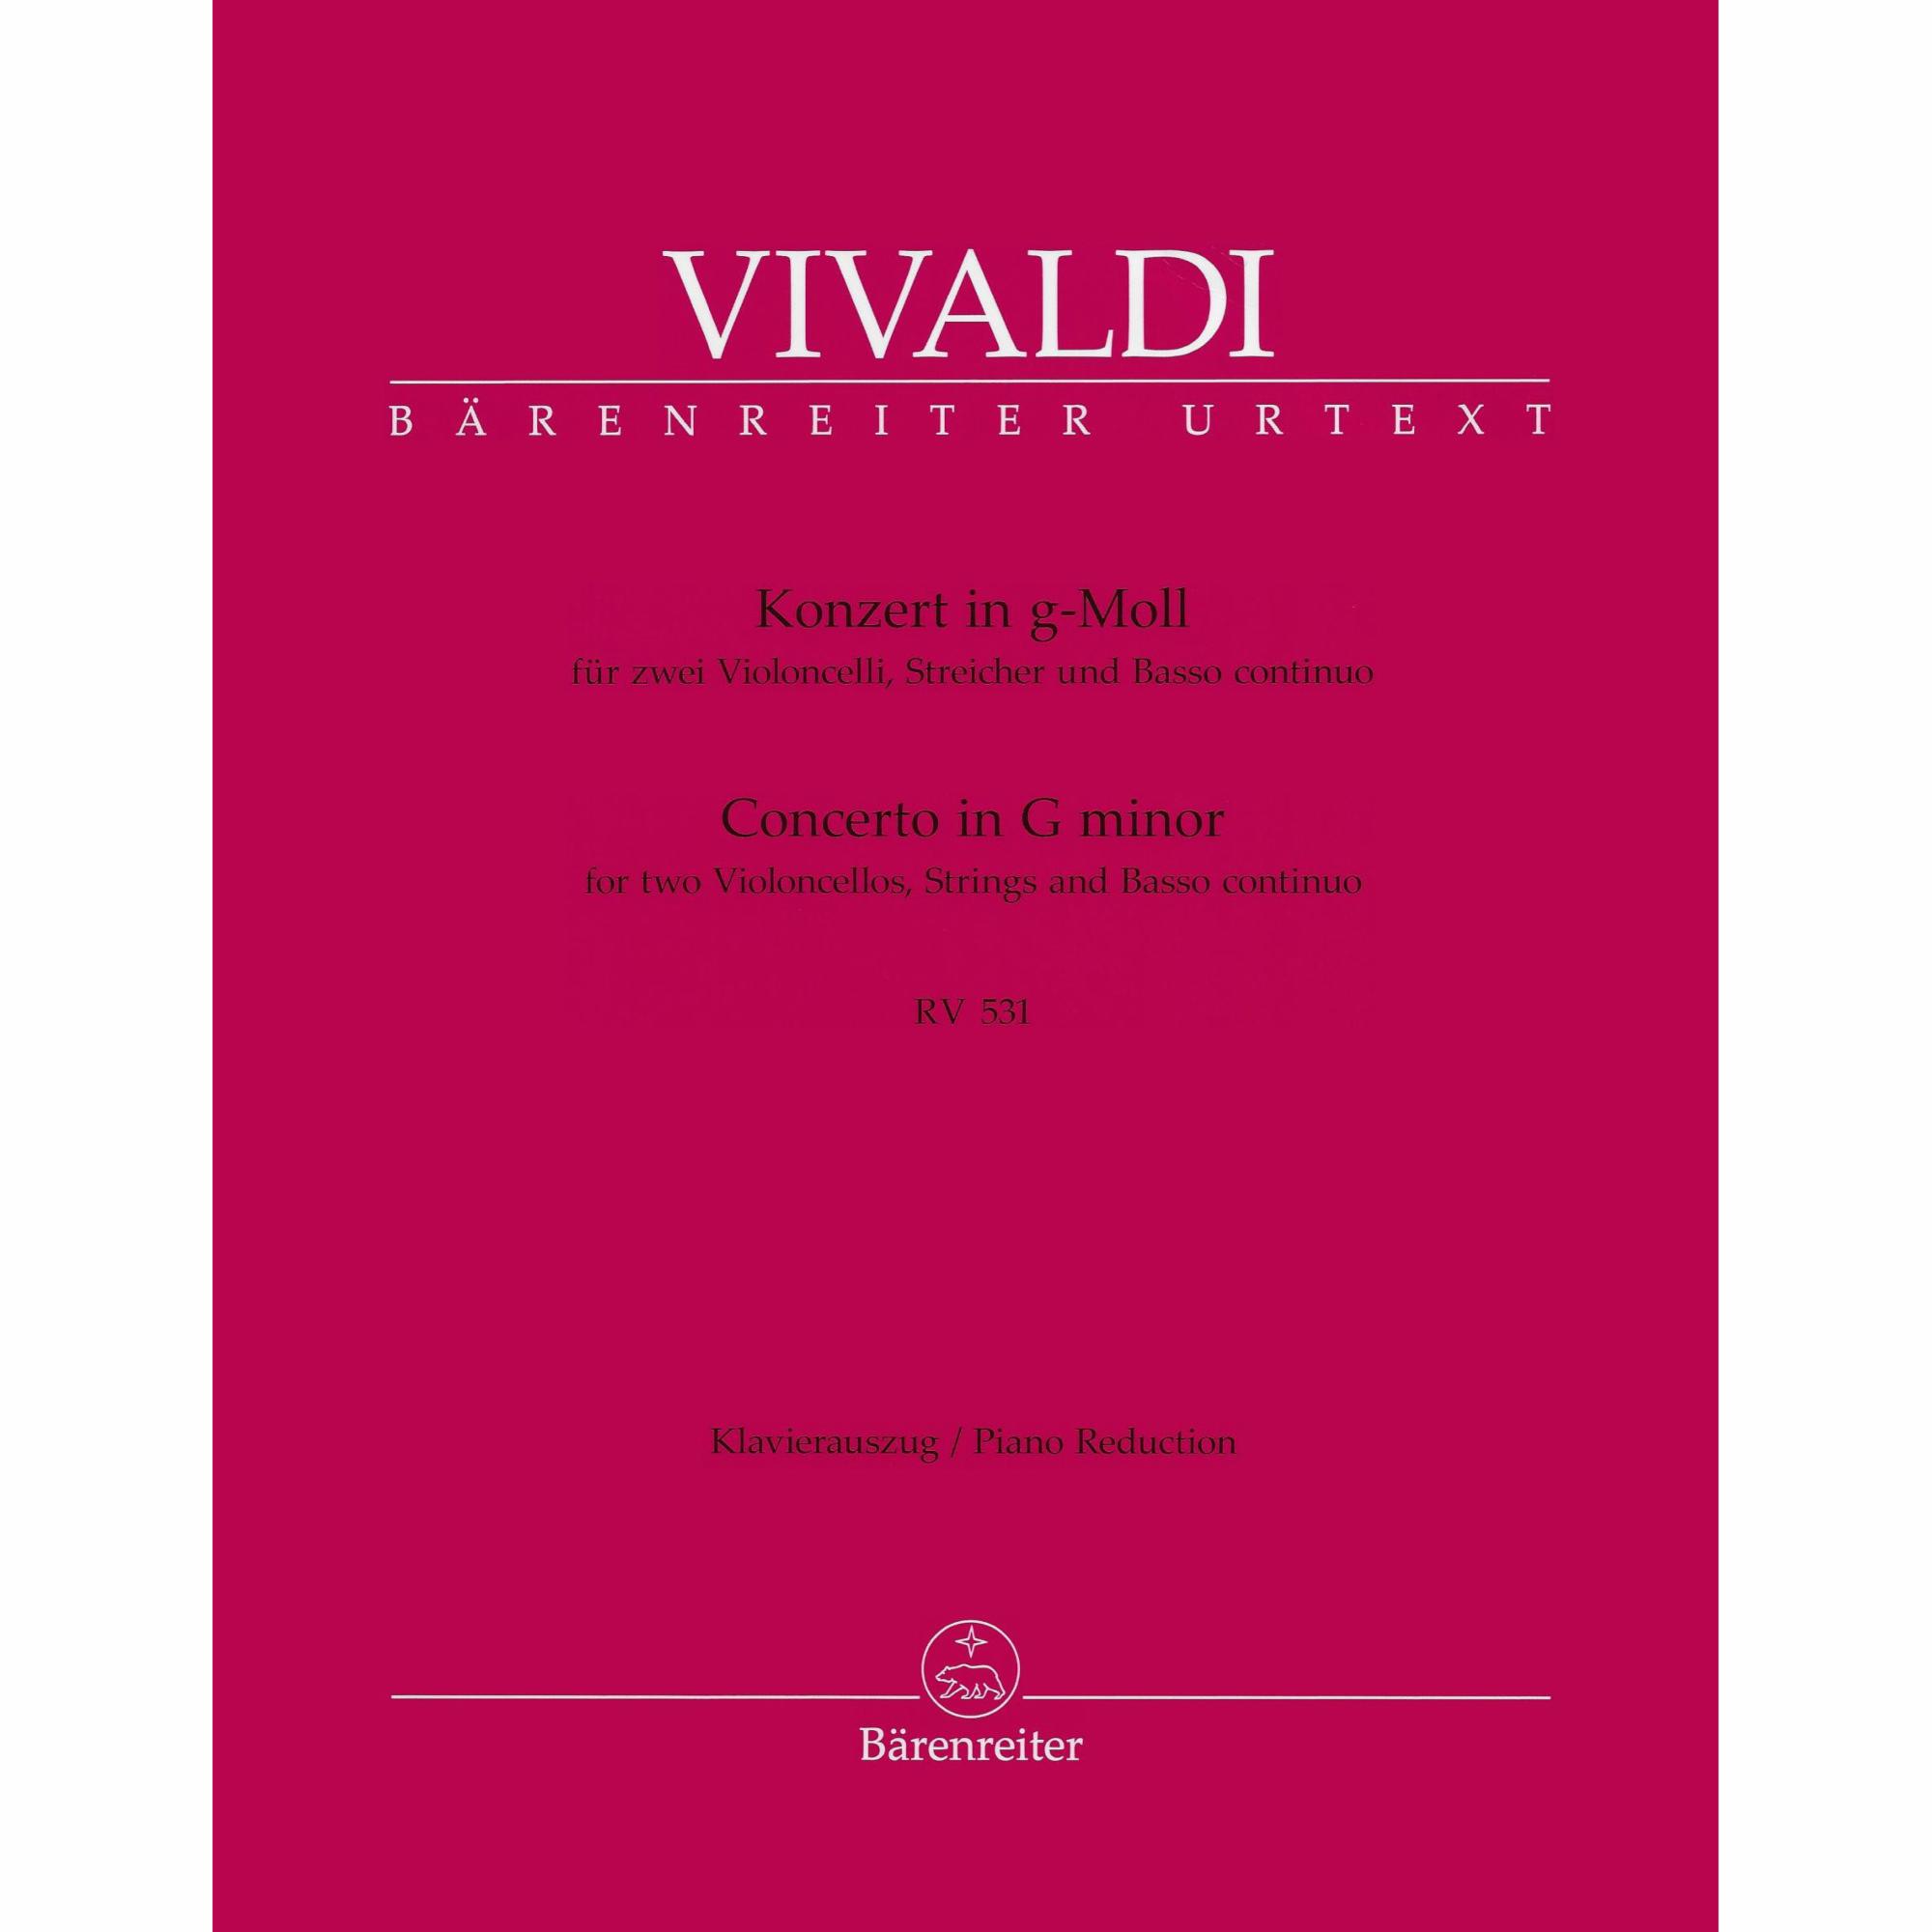 Vivaldi -- Concerto in G Minor, RV 531 for Two Cellos and Piano